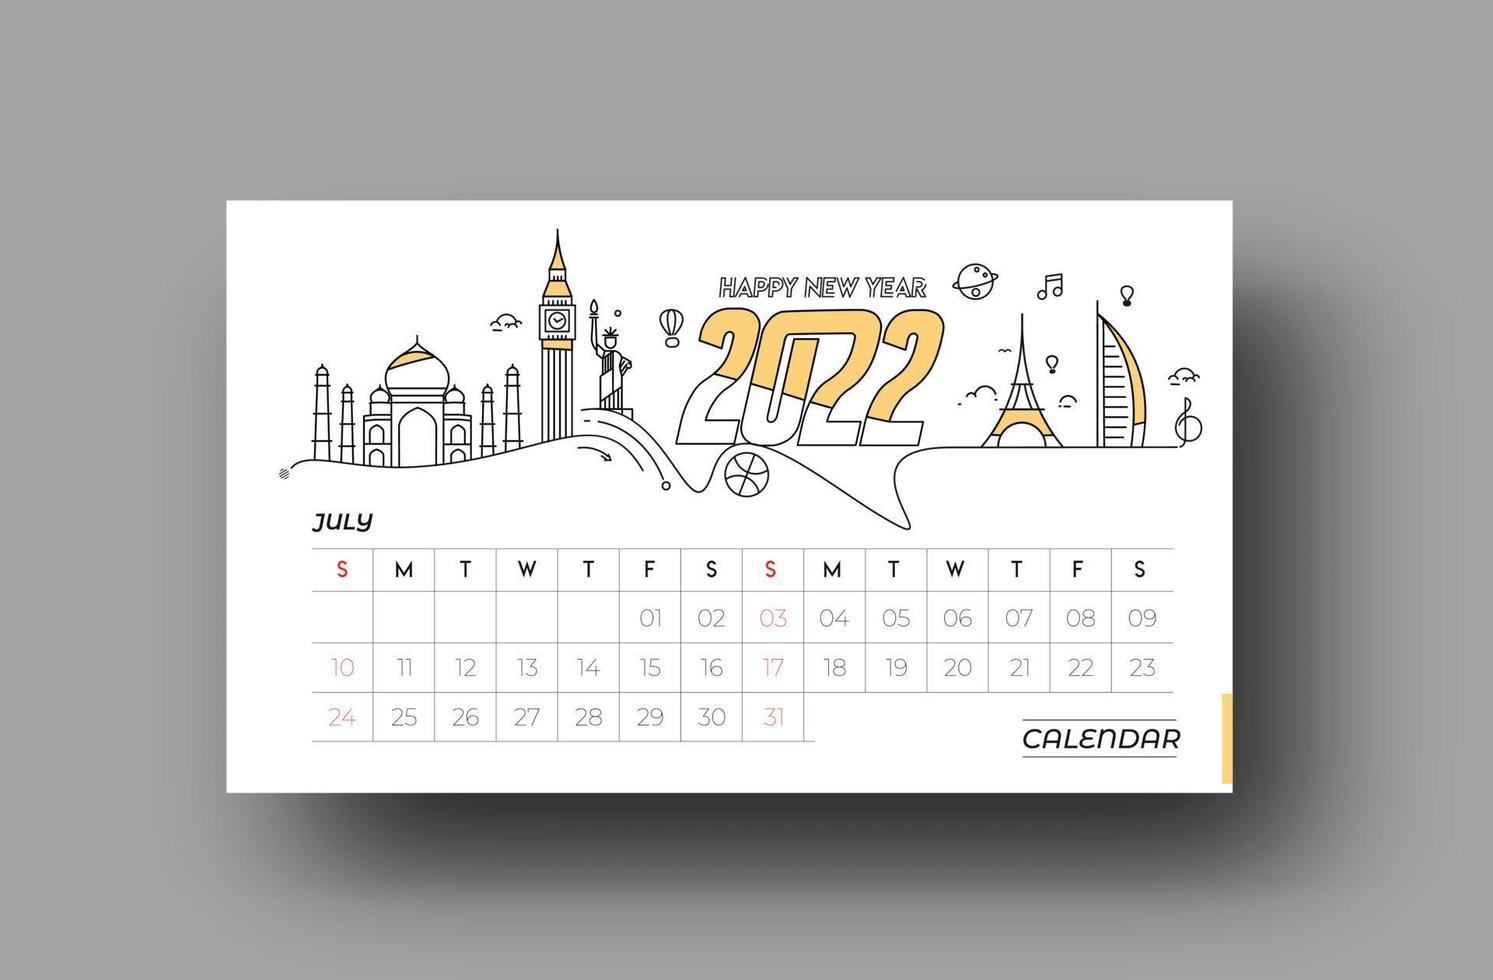 felice anno nuovo 2022 calendario febbraio - elementi di design per le vacanze di capodanno per biglietti di auguri, poster banner calendario per decorazioni, sfondo illustrazione vettoriale. vettore